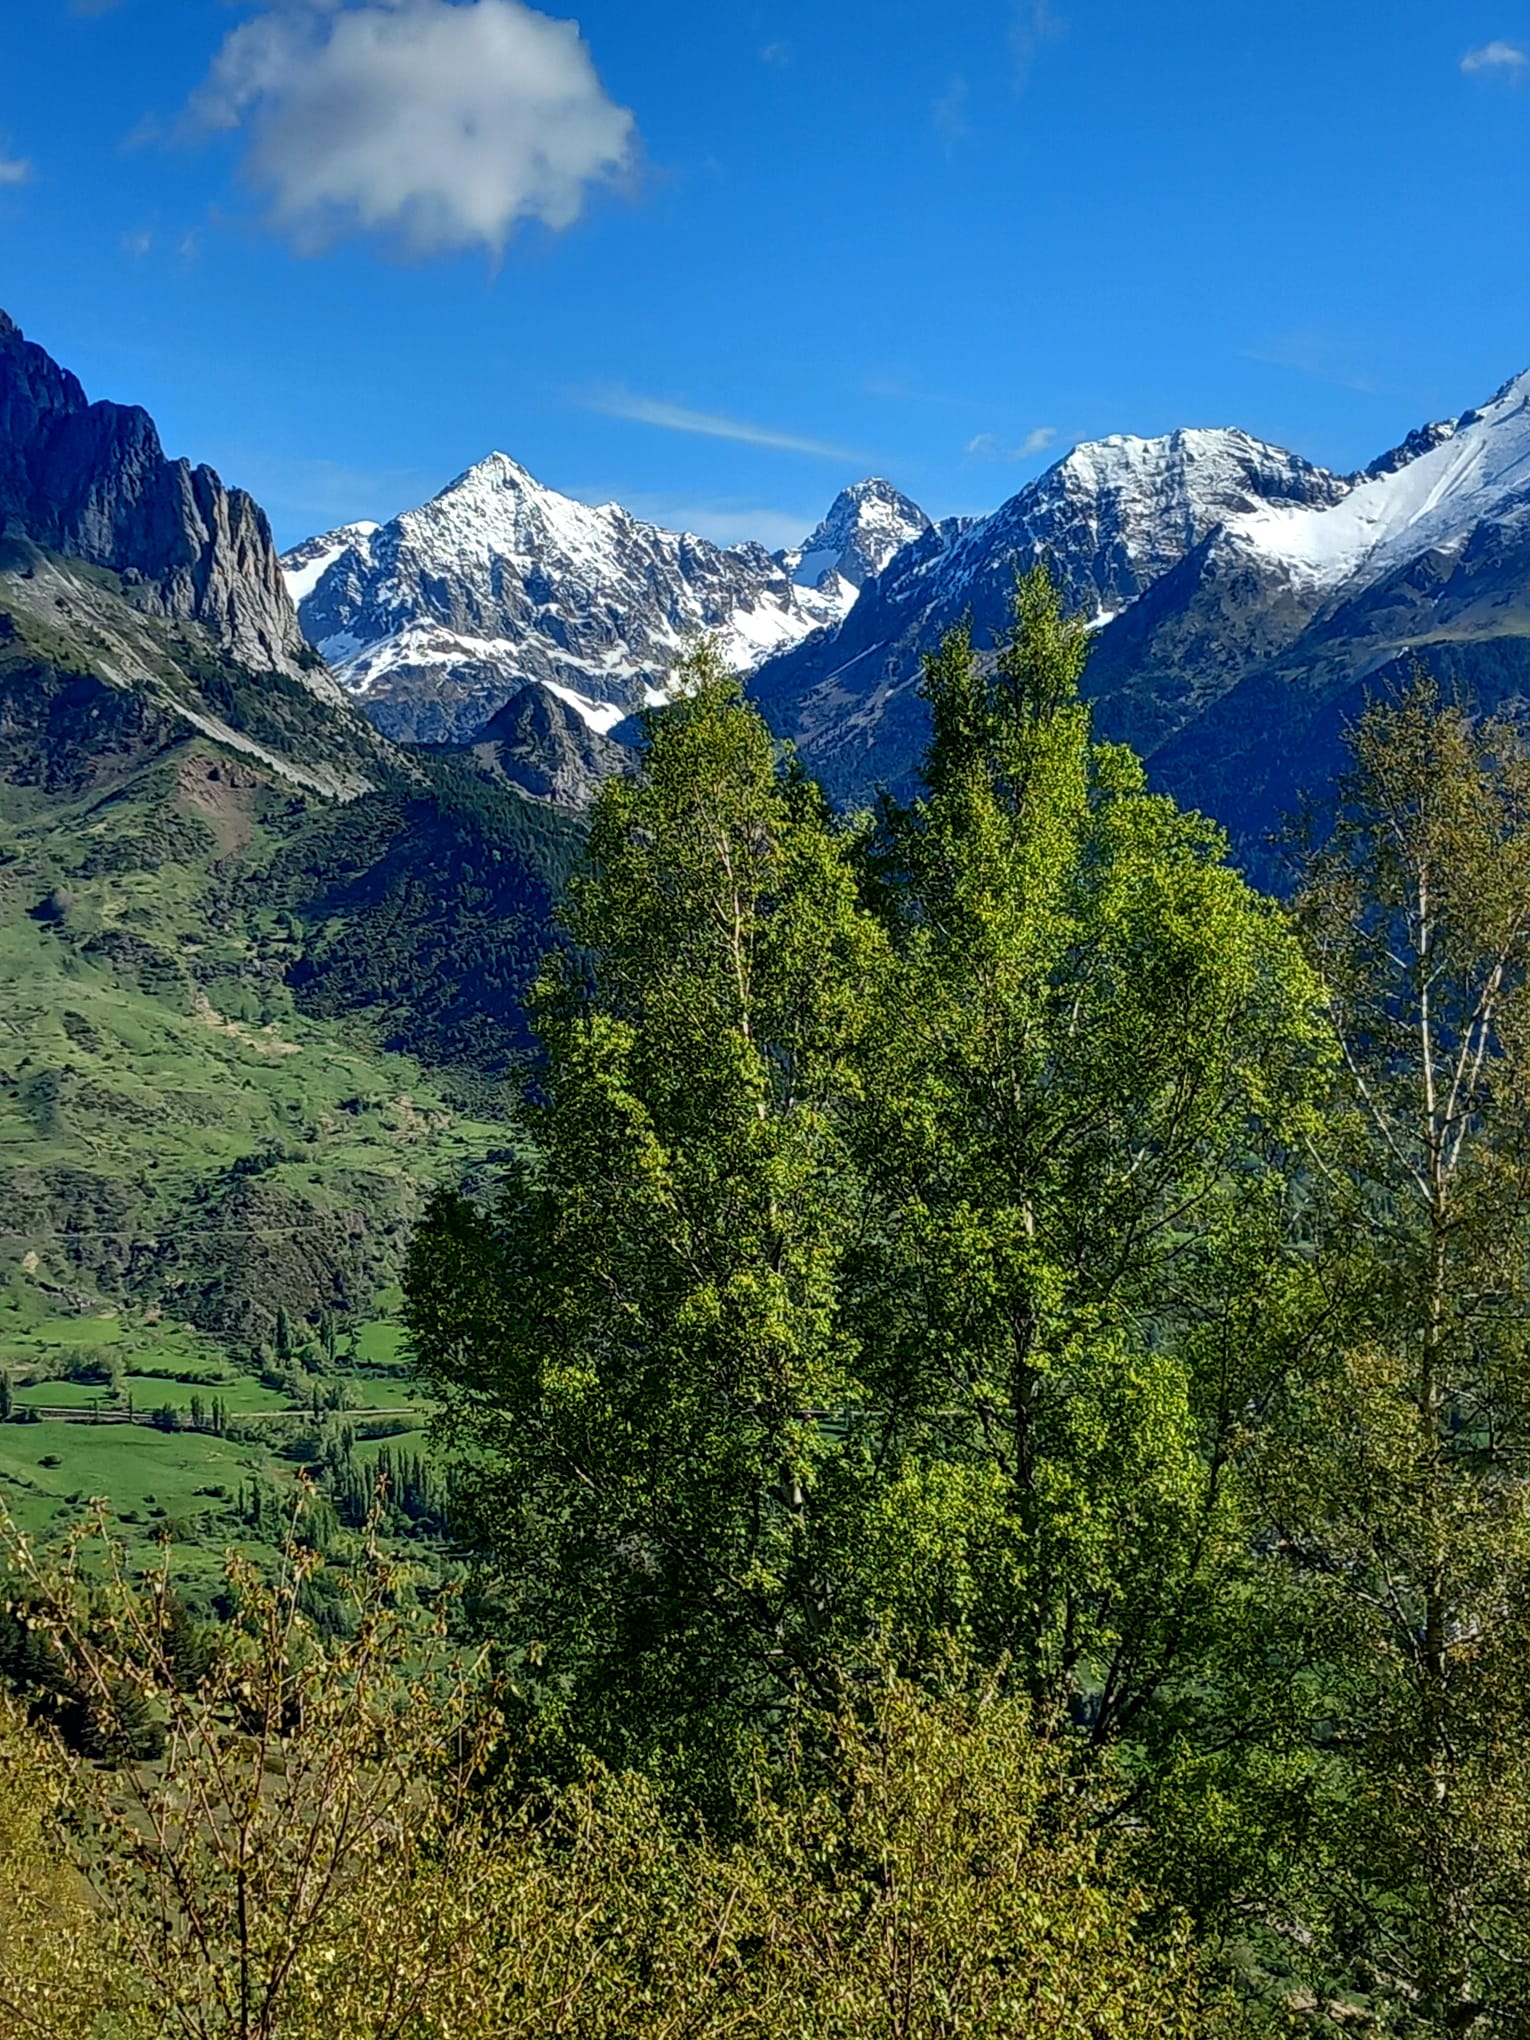  un mirador de excepción sobre tresmiles del Pirineo como el Midi, Anayet, Peña Telera...<br />
